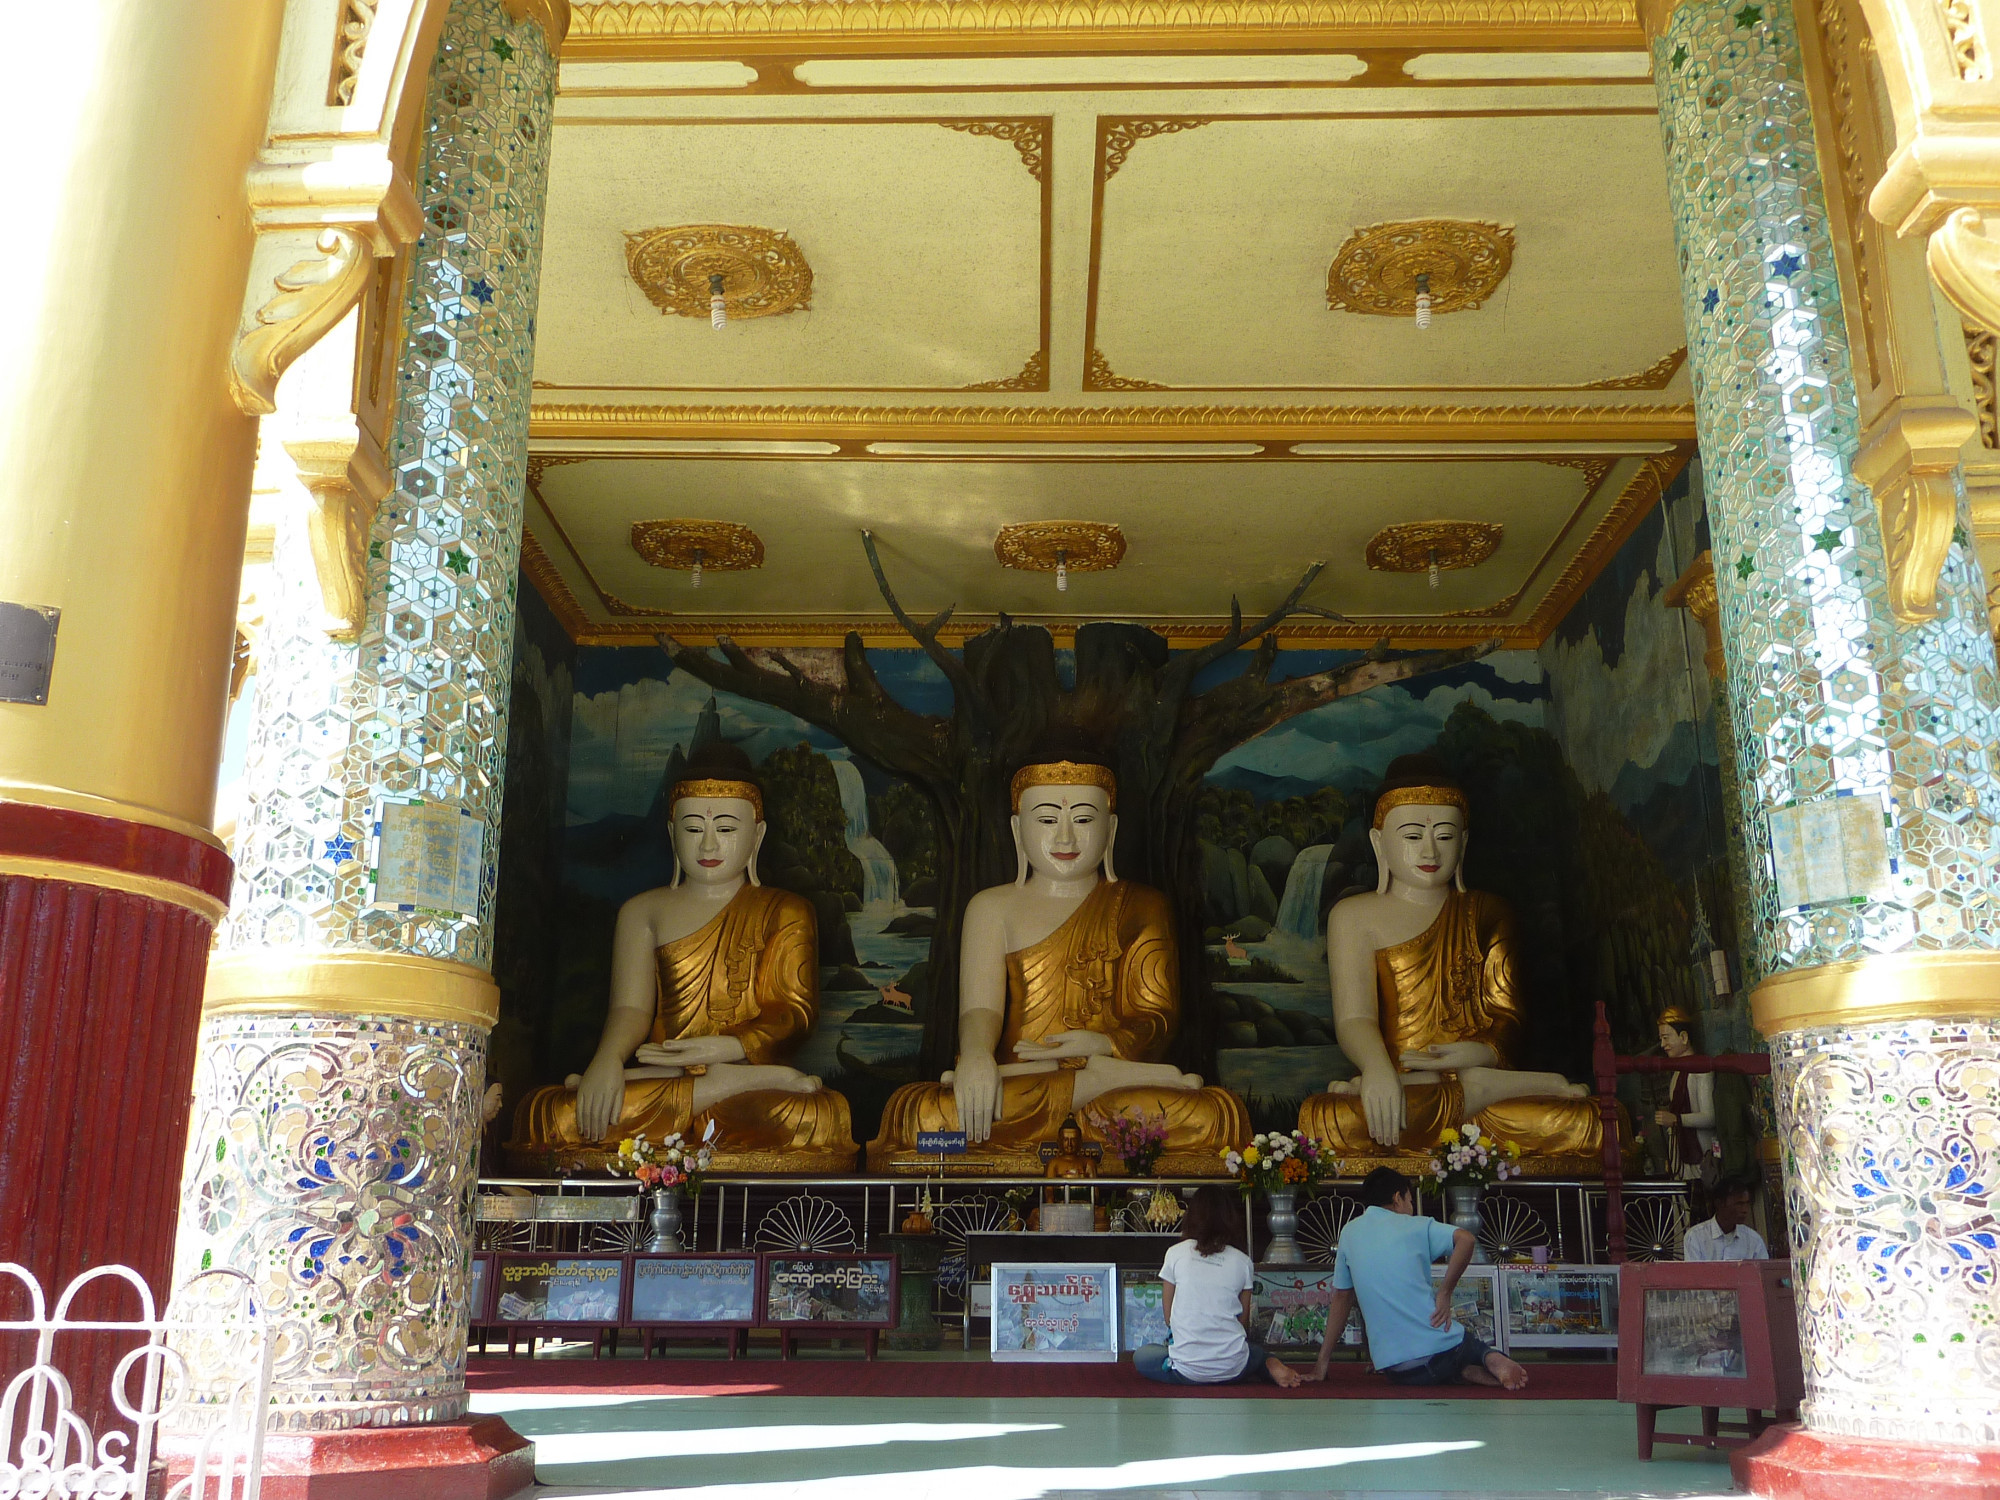 Three Seated Buddha's